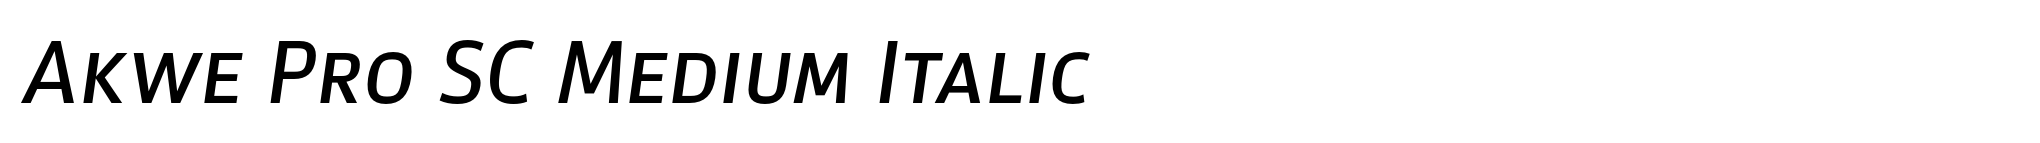 Akwe Pro SC Medium Italic image